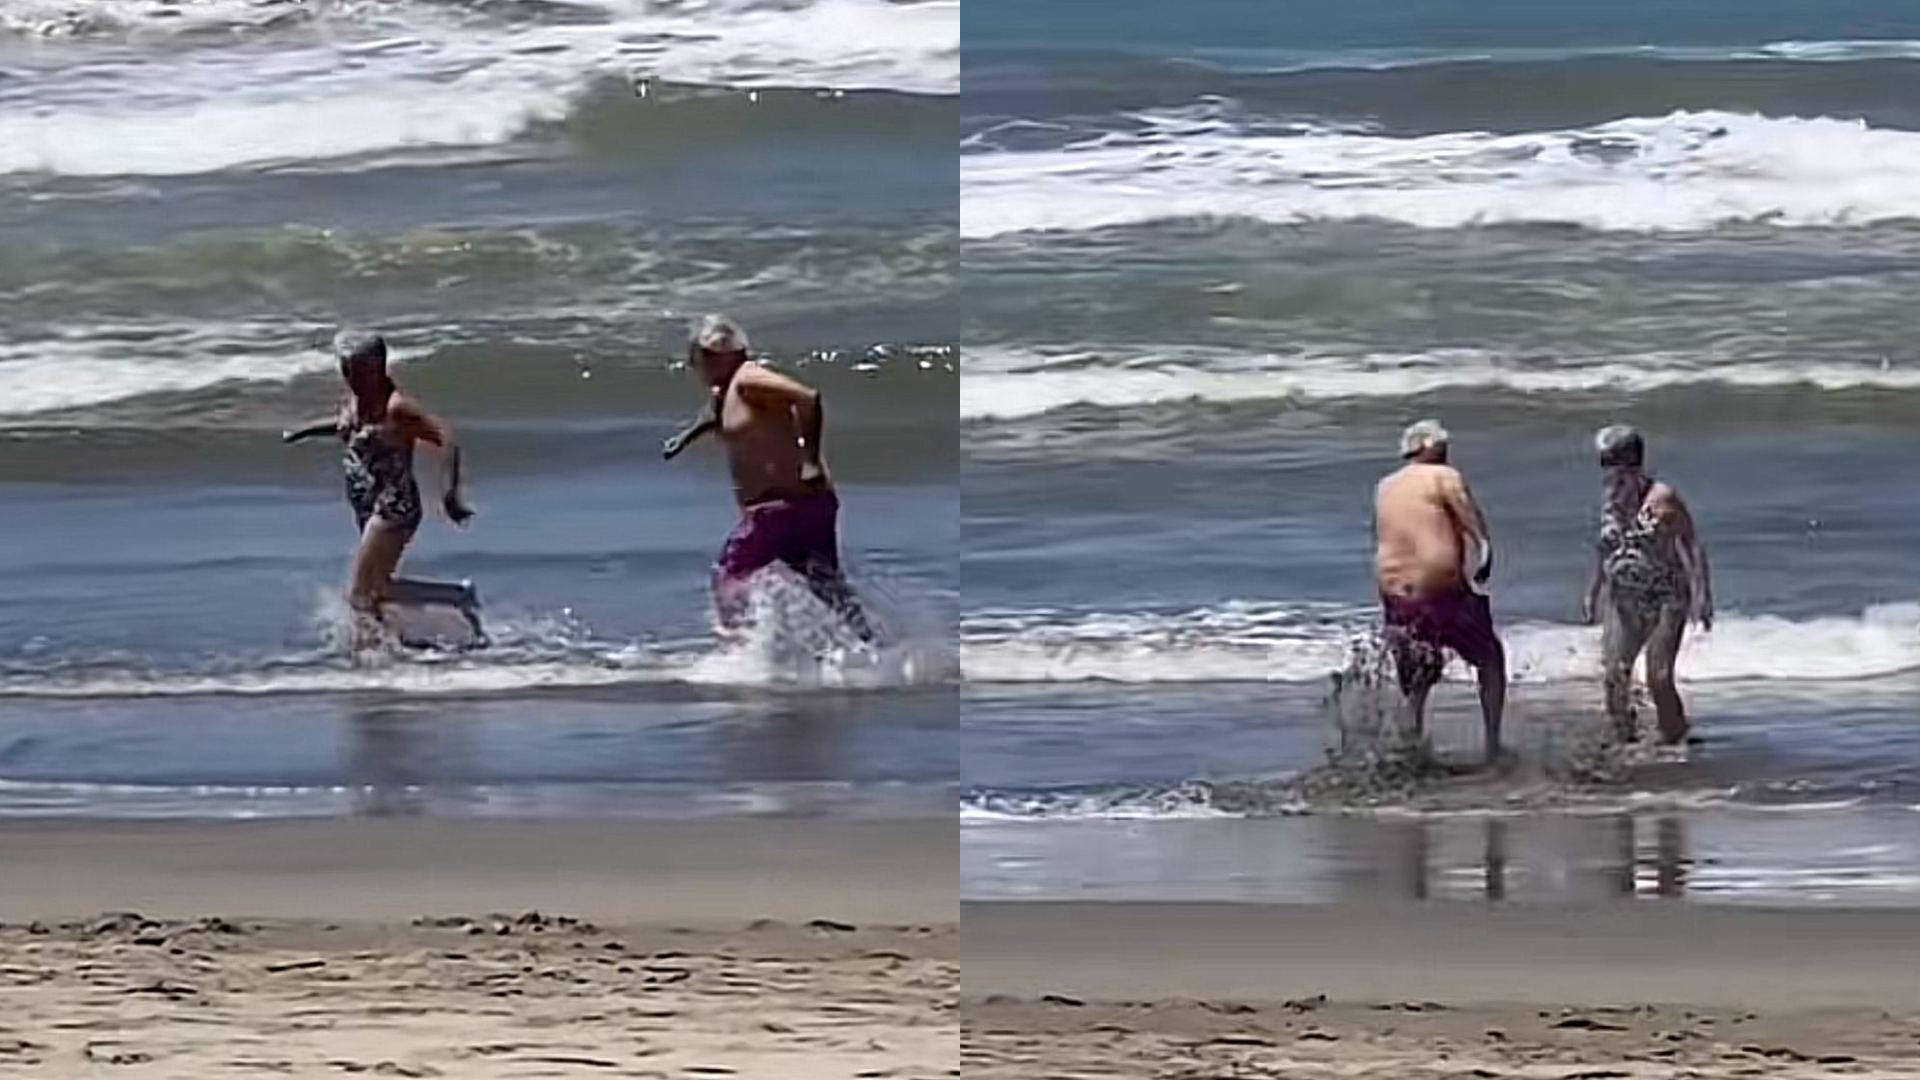 VIDEO | "Amor eterno 🥺" Pareja de abuelitos 👵👴 reviven su romance ❤️ jugando como niños en la playa